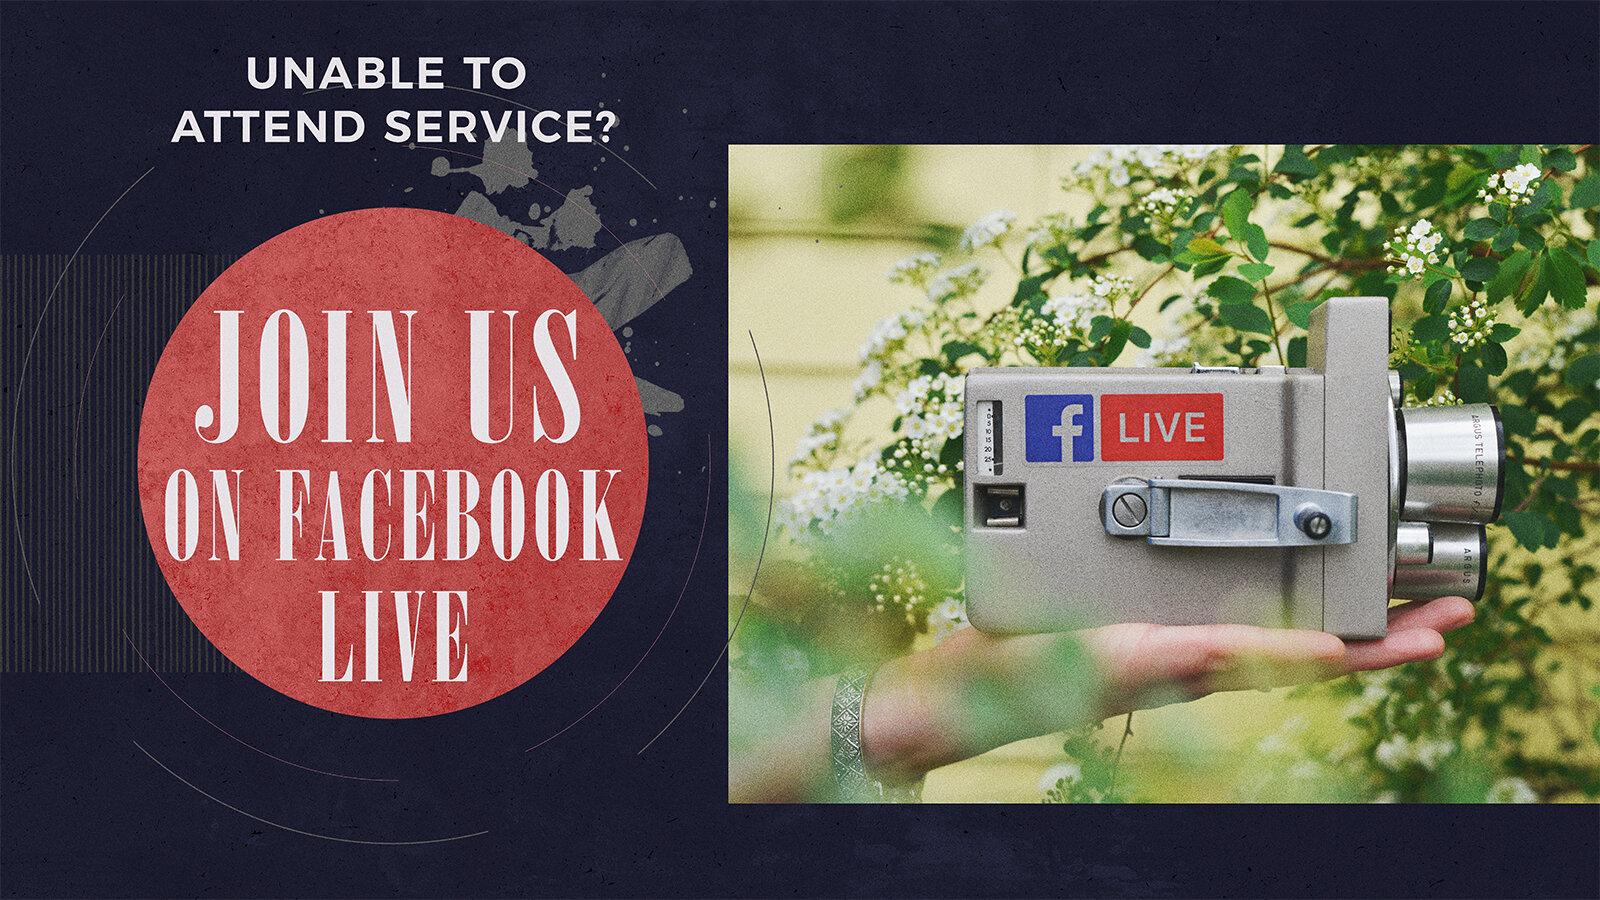 Facebook live church service